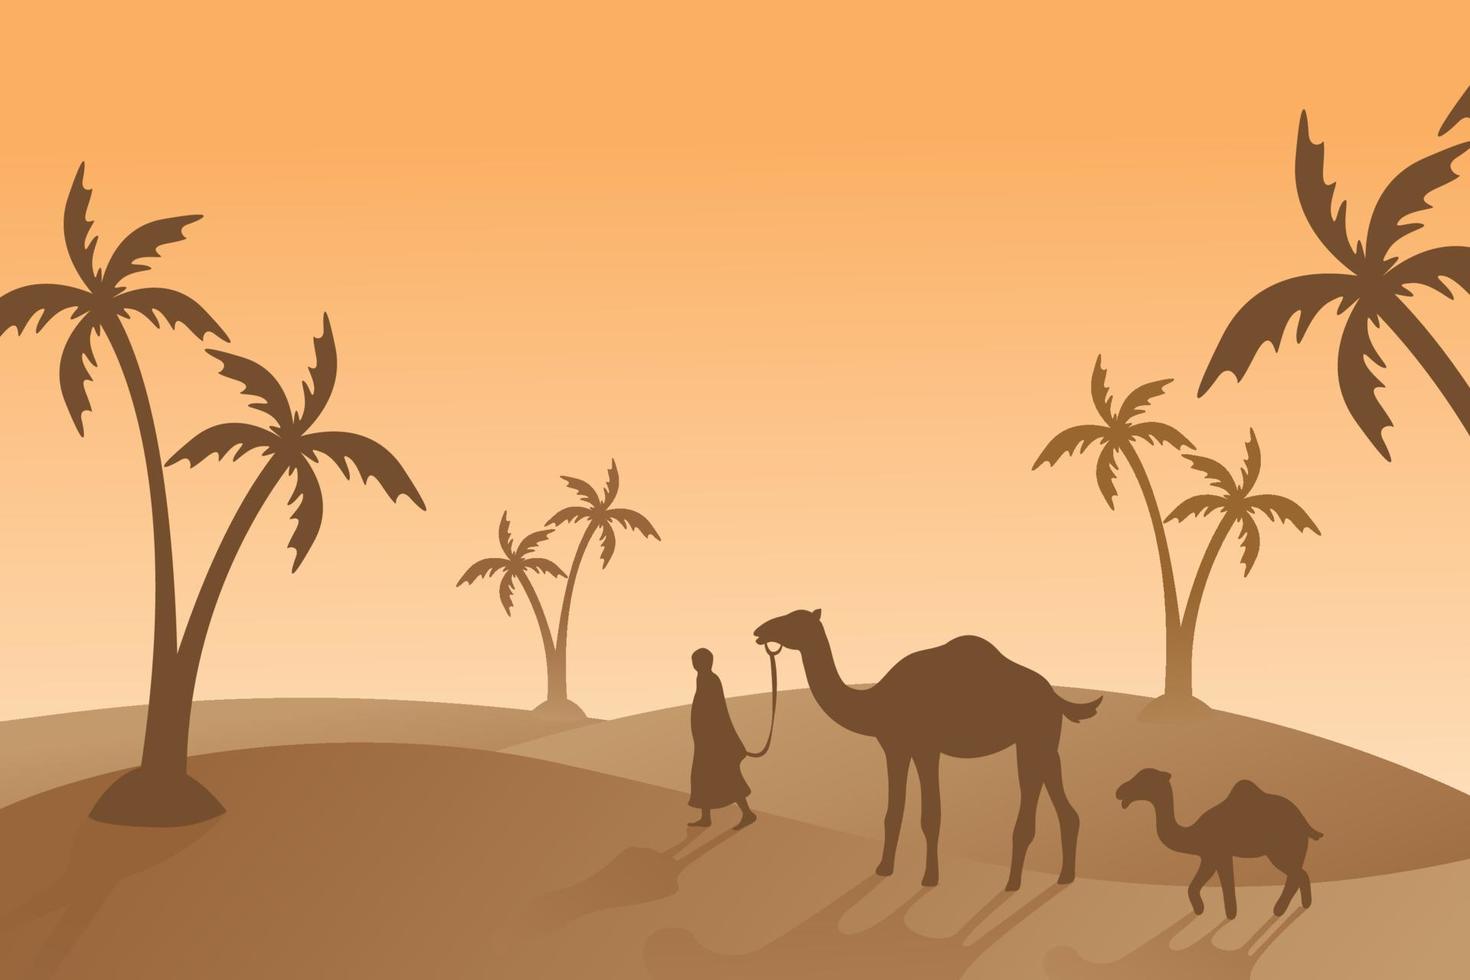 islamischer hintergrund des kamels und der leute, illustrationstapete, eid al adha feiertag, schöne landschaft, palme, sandwüste, vektorgrafik vektor